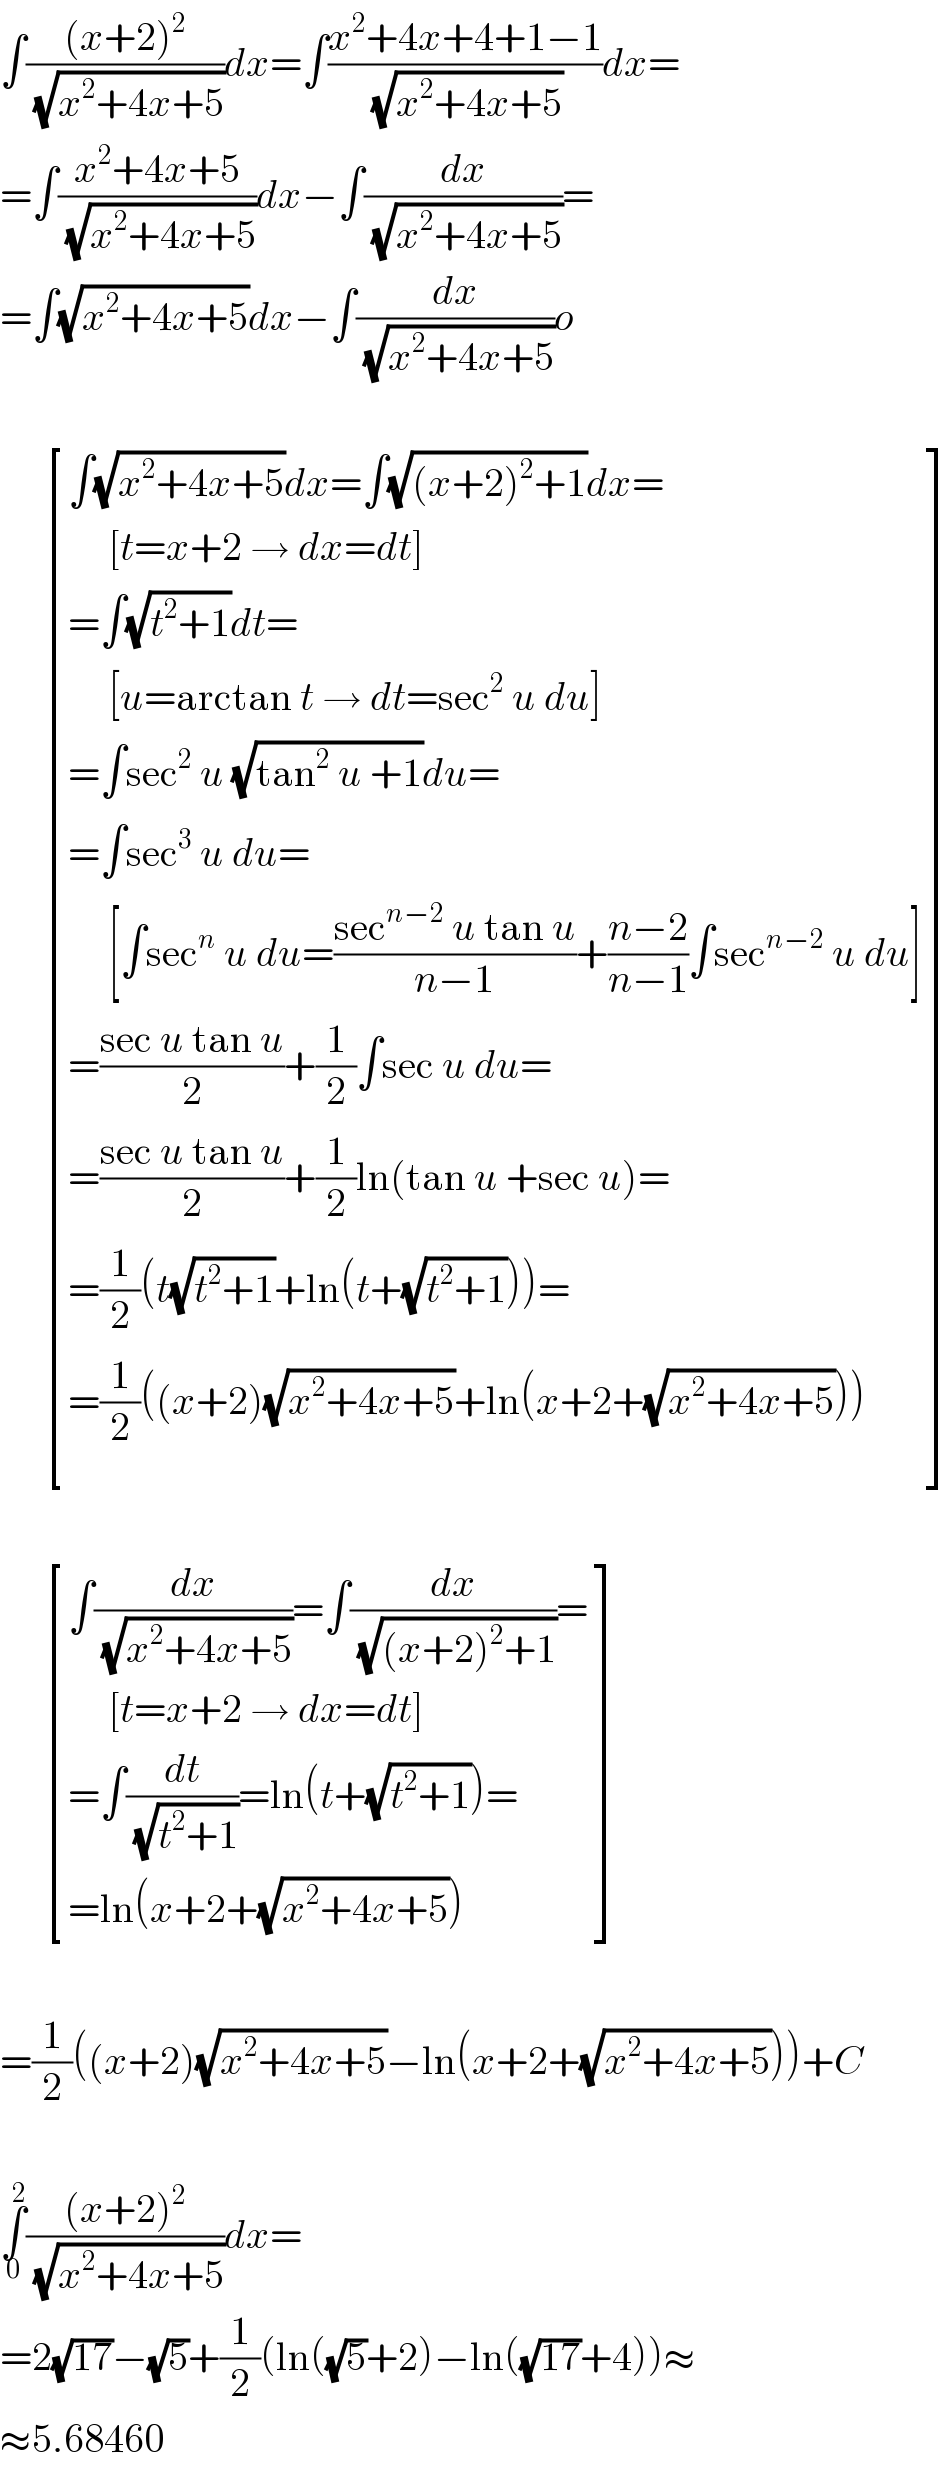 ∫(((x+2)^2 )/(√(x^2 +4x+5)))dx=∫((x^2 +4x+4+1−1)/(√(x^2 +4x+5)))dx=  =∫((x^2 +4x+5)/(√(x^2 +4x+5)))dx−∫(dx/(√(x^2 +4x+5)))=  =∫(√(x^2 +4x+5))dx−∫(dx/(√(x^2 +4x+5)))o          [((∫(√(x^2 +4x+5))dx=∫(√((x+2)^2 +1))dx=)),((     [t=x+2 → dx=dt])),((=∫(√(t^2 +1))dt=)),((     [u=arctan t → dt=sec^2  u du])),((=∫sec^2  u (√(tan^2  u +1))du=)),((=∫sec^3  u du=)),((     [∫sec^n  u du=((sec^(n−2)  u tan u)/(n−1))+((n−2)/(n−1))∫sec^(n−2)  u du])),((=((sec u tan u)/2)+(1/2)∫sec u du=)),((=((sec u tan u)/2)+(1/2)ln(tan u +sec u)=)),((=(1/2)(t(√(t^2 +1))+ln(t+(√(t^2 +1))))=)),((=(1/2)((x+2)(√(x^2 +4x+5))+ln(x+2+(√(x^2 +4x+5)))))) ]          [((∫(dx/(√(x^2 +4x+5)))=∫(dx/(√((x+2)^2 +1)))=)),((     [t=x+2 → dx=dt])),((=∫(dt/(√(t^2 +1)))=ln(t+(√(t^2 +1)))=)),((=ln(x+2+(√(x^2 +4x+5))))) ]    =(1/2)((x+2)(√(x^2 +4x+5))−ln(x+2+(√(x^2 +4x+5))))+C    ∫_0 ^2 (((x+2)^2 )/(√(x^2 +4x+5)))dx=  =2(√(17))−(√5)+(1/2)(ln((√5)+2)−ln((√(17))+4))≈  ≈5.68460  